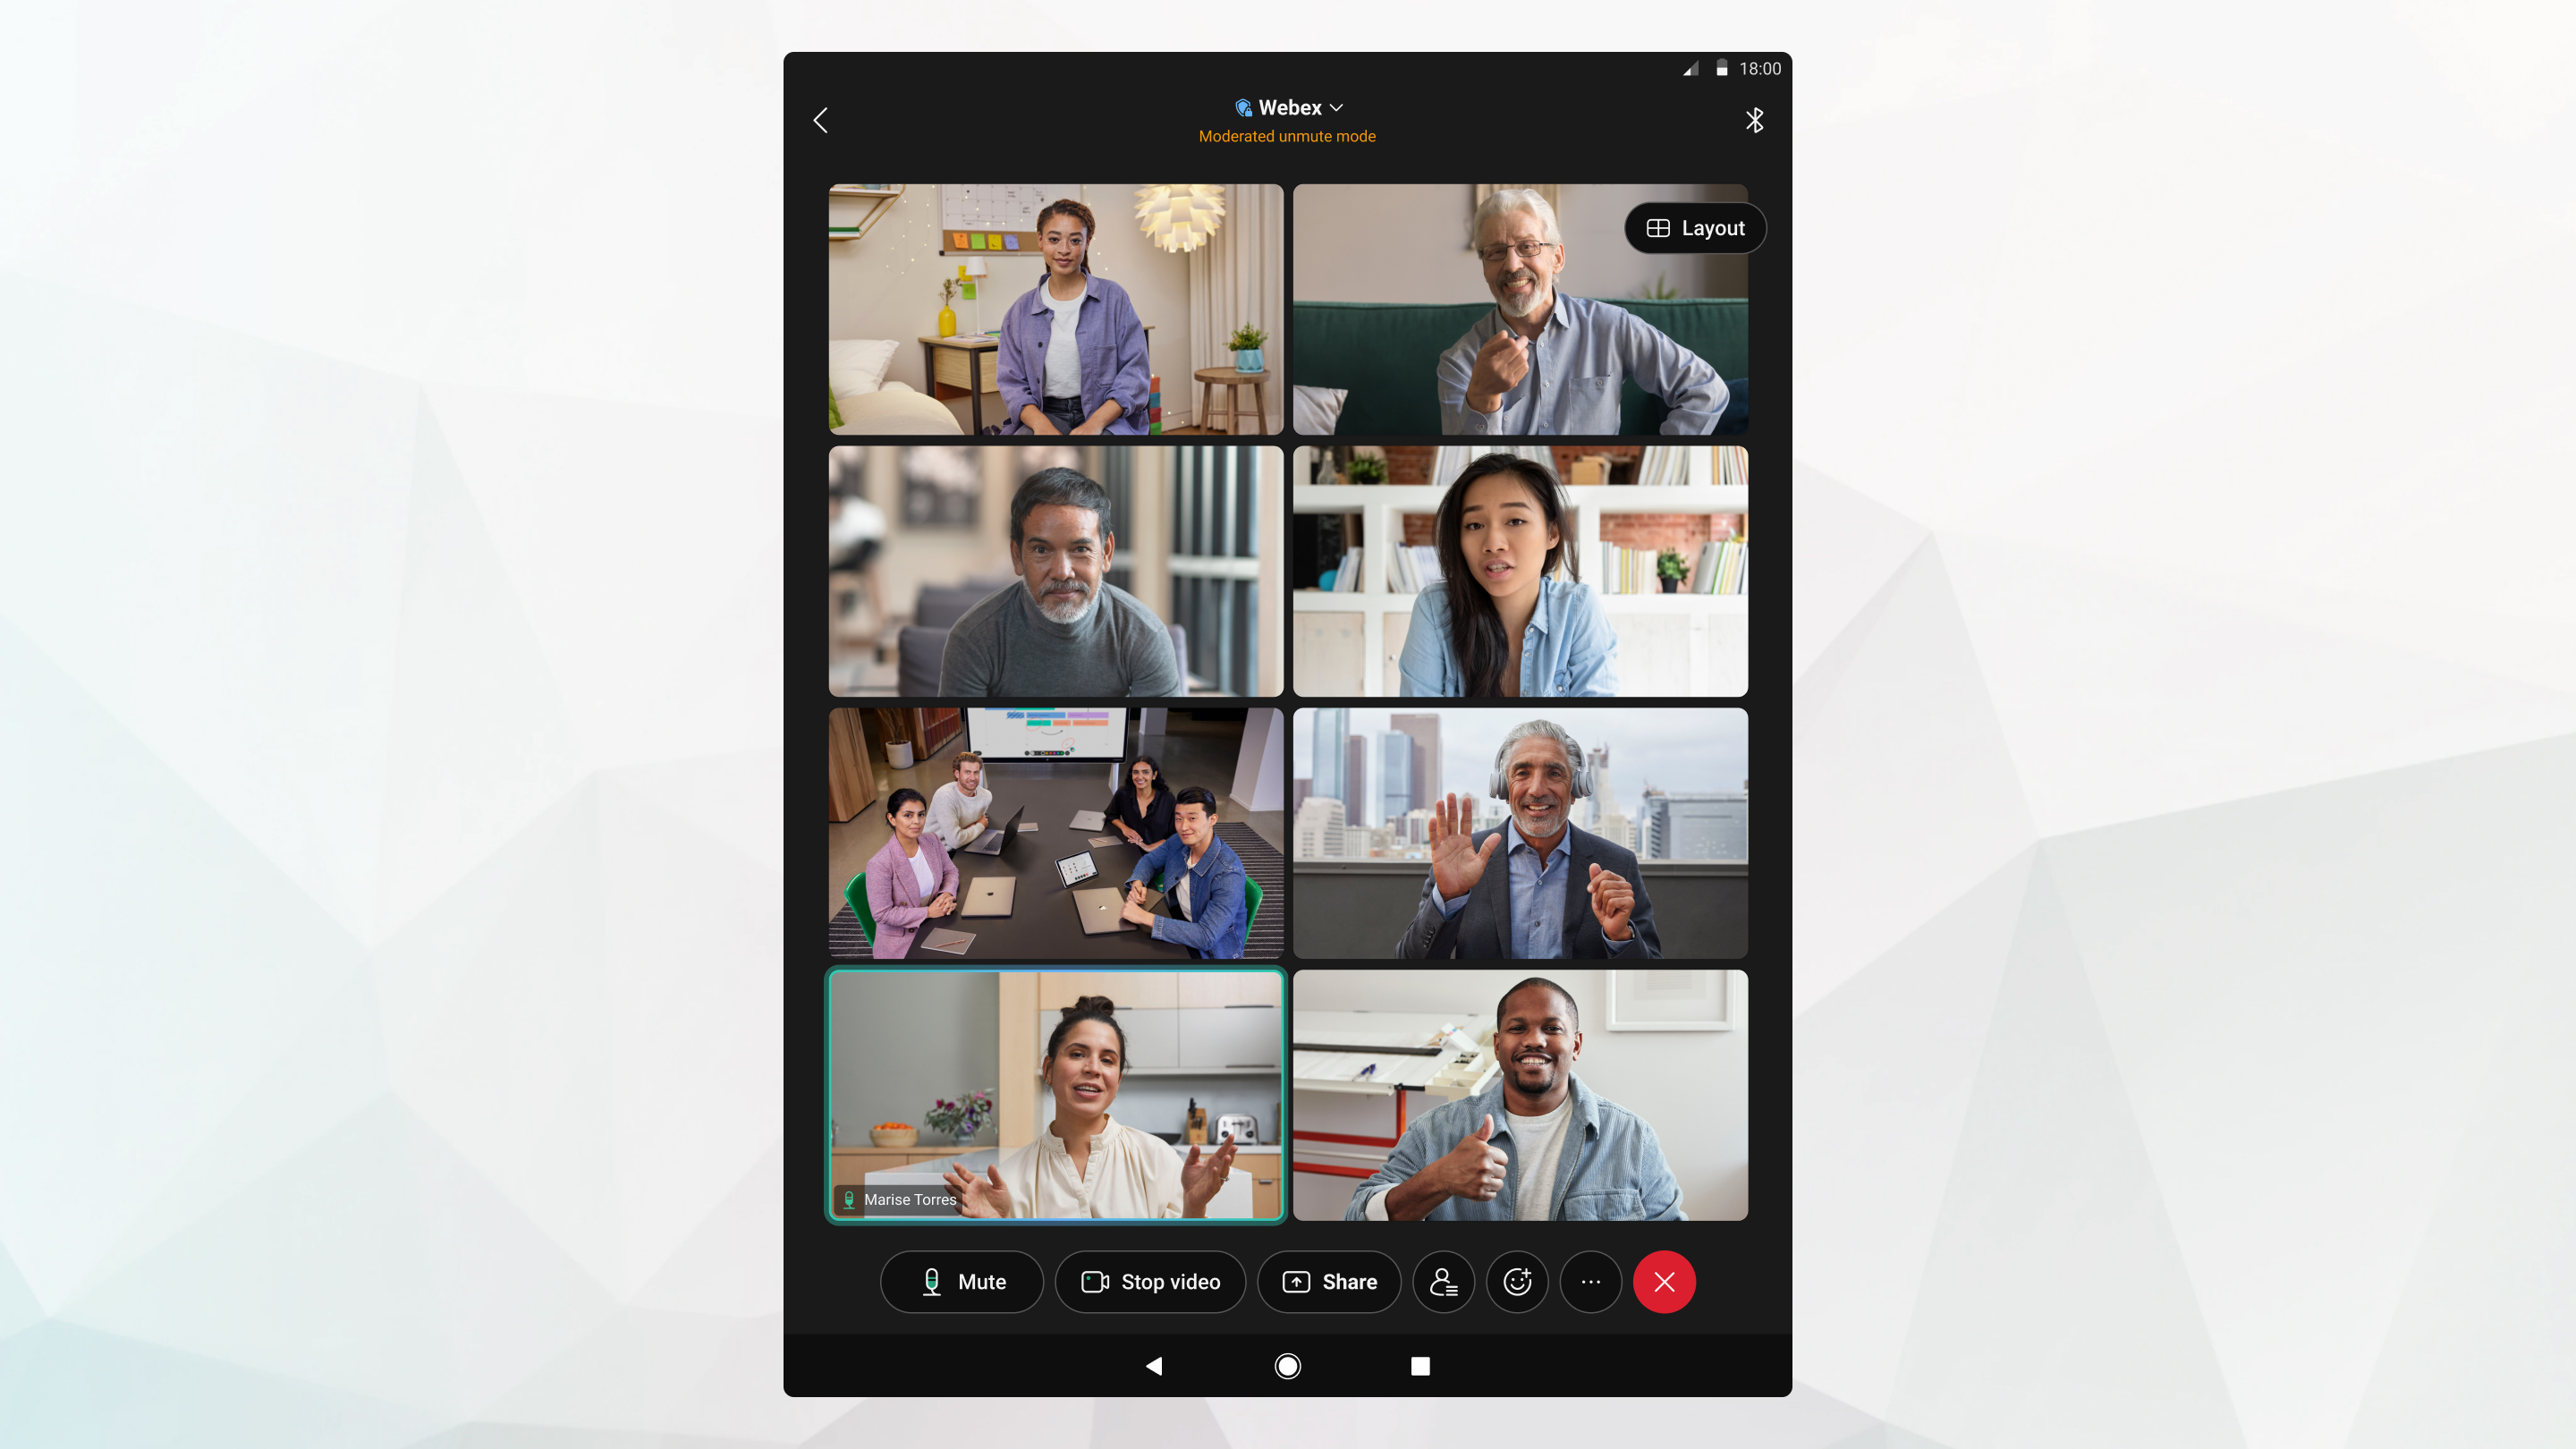 2x4 vizualizare caroiaj în timpul unei întâlniri pe o tabletă Android